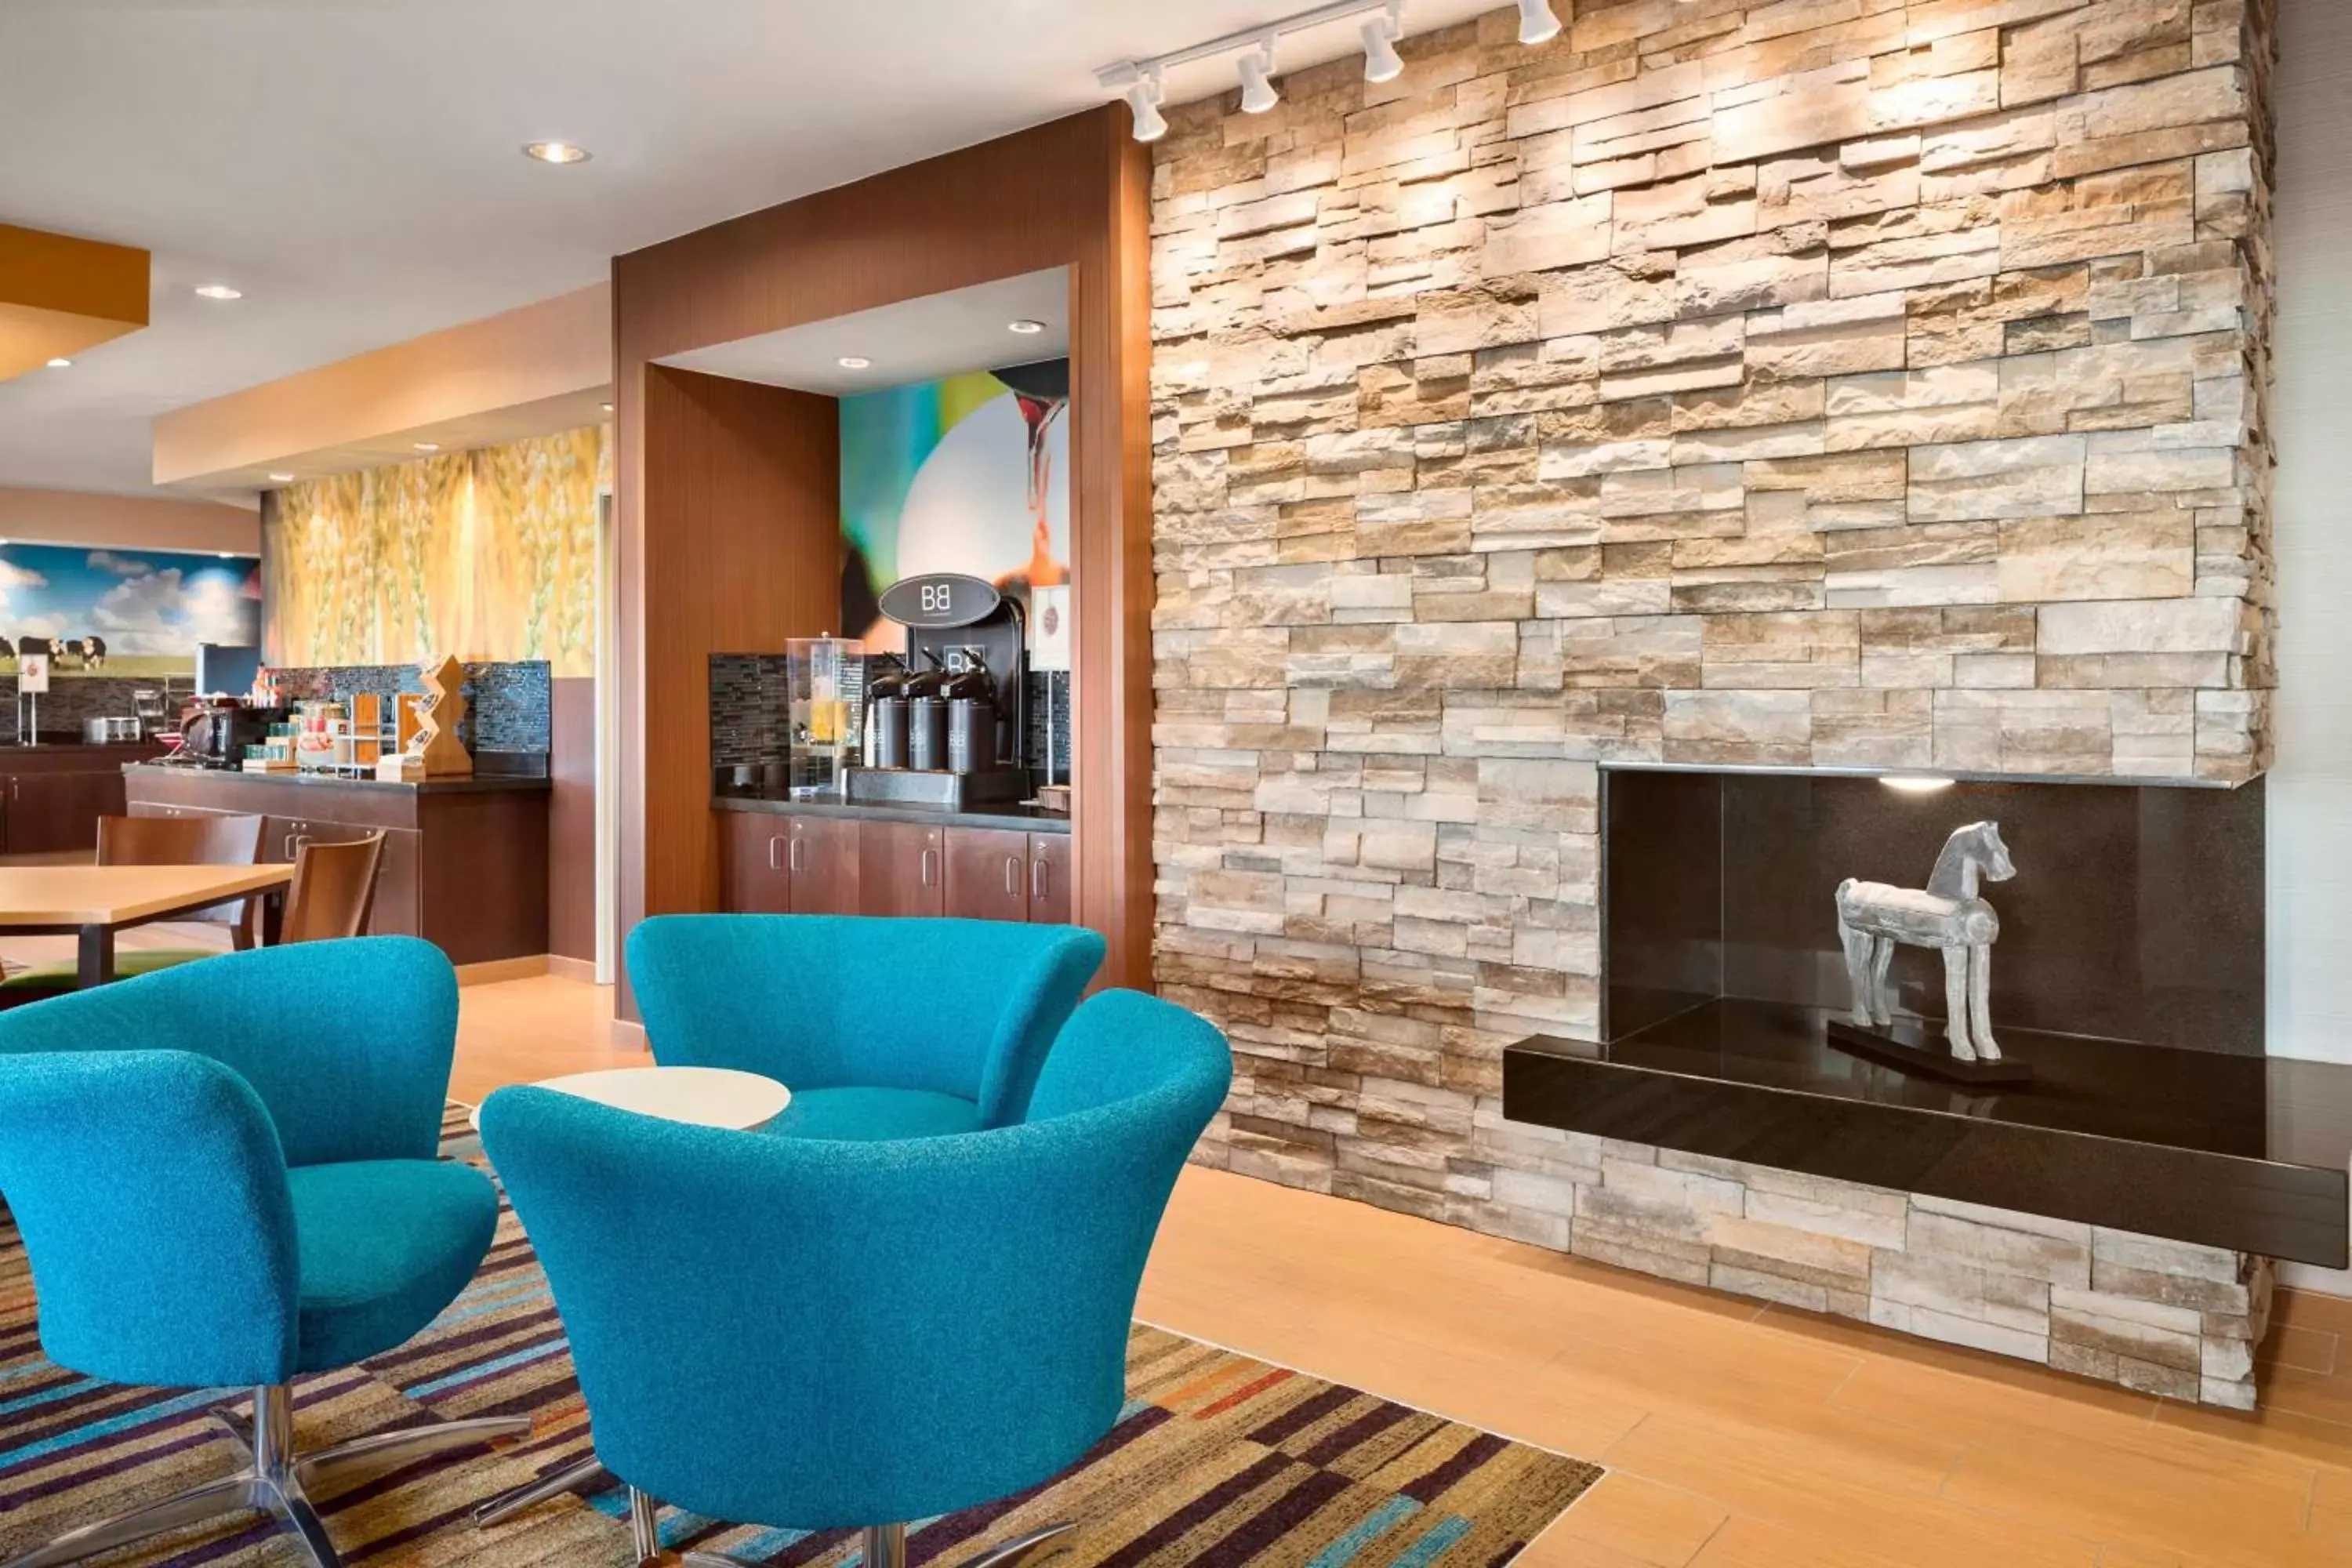 Lobby or reception in Fairfield Inn & Suites Lima